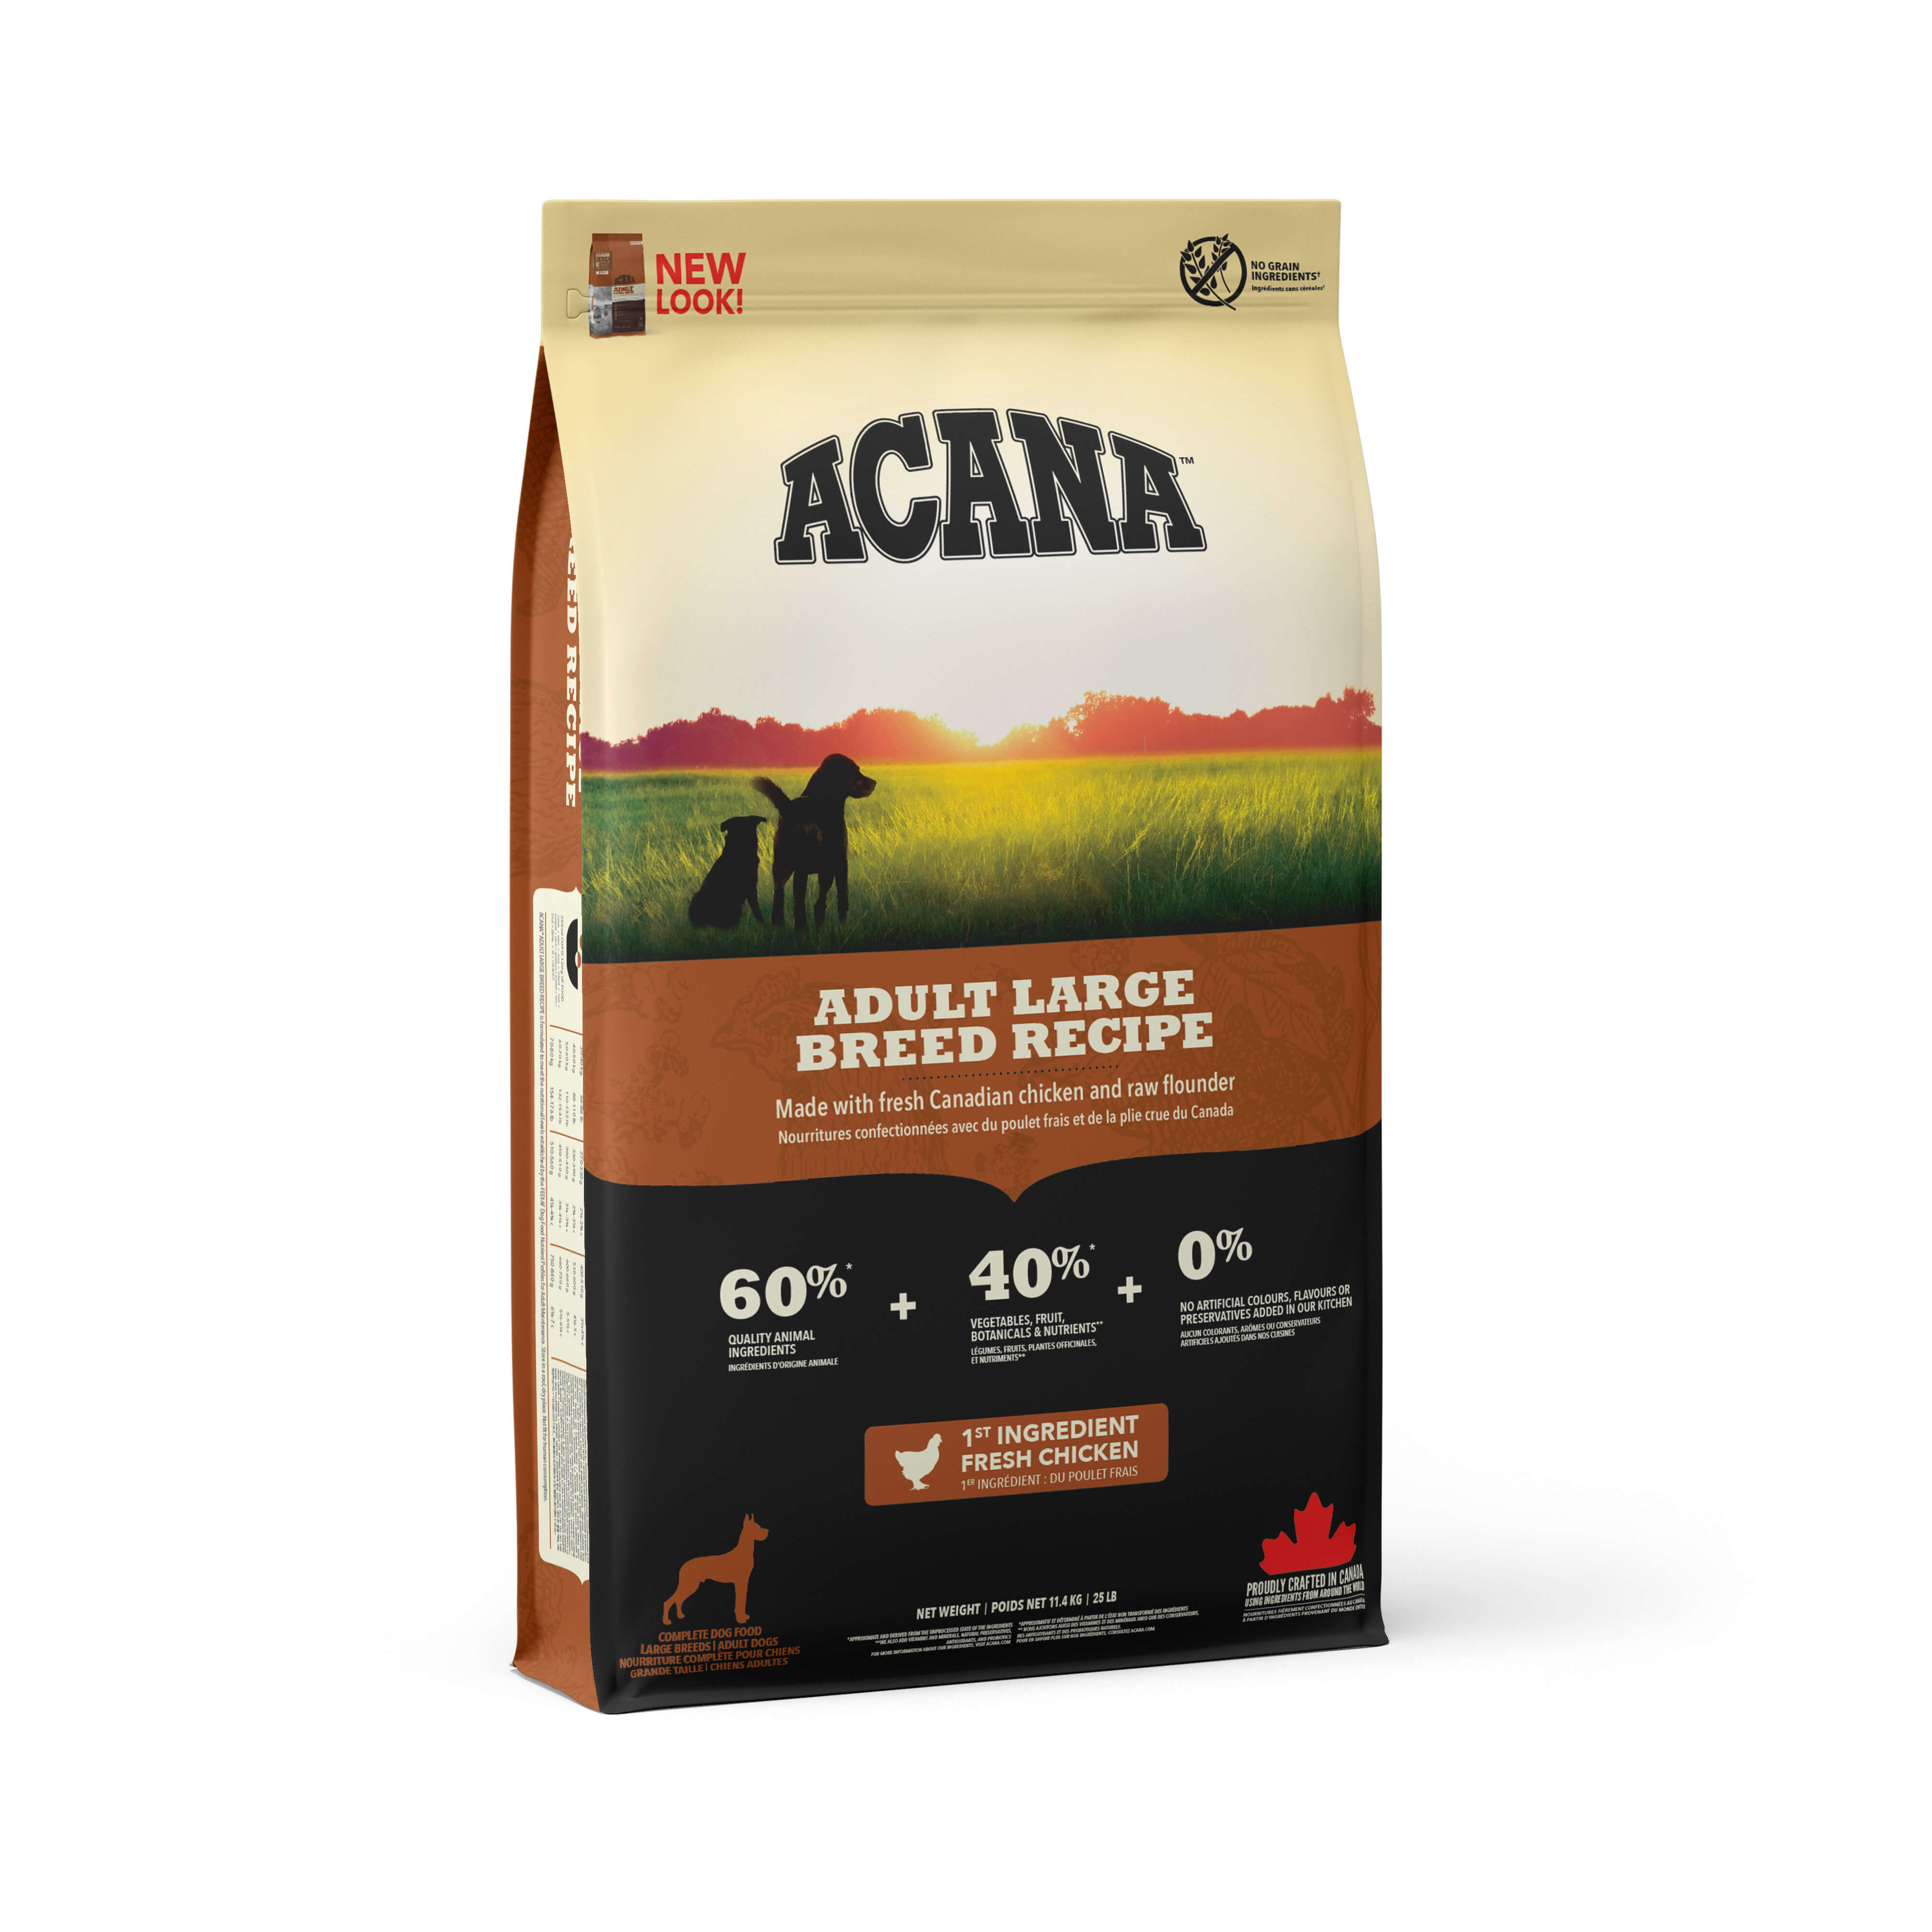 並行輸入品アカナ2個セットアダルトラージブリード レシピ 大型成犬用 11.4kg×2入